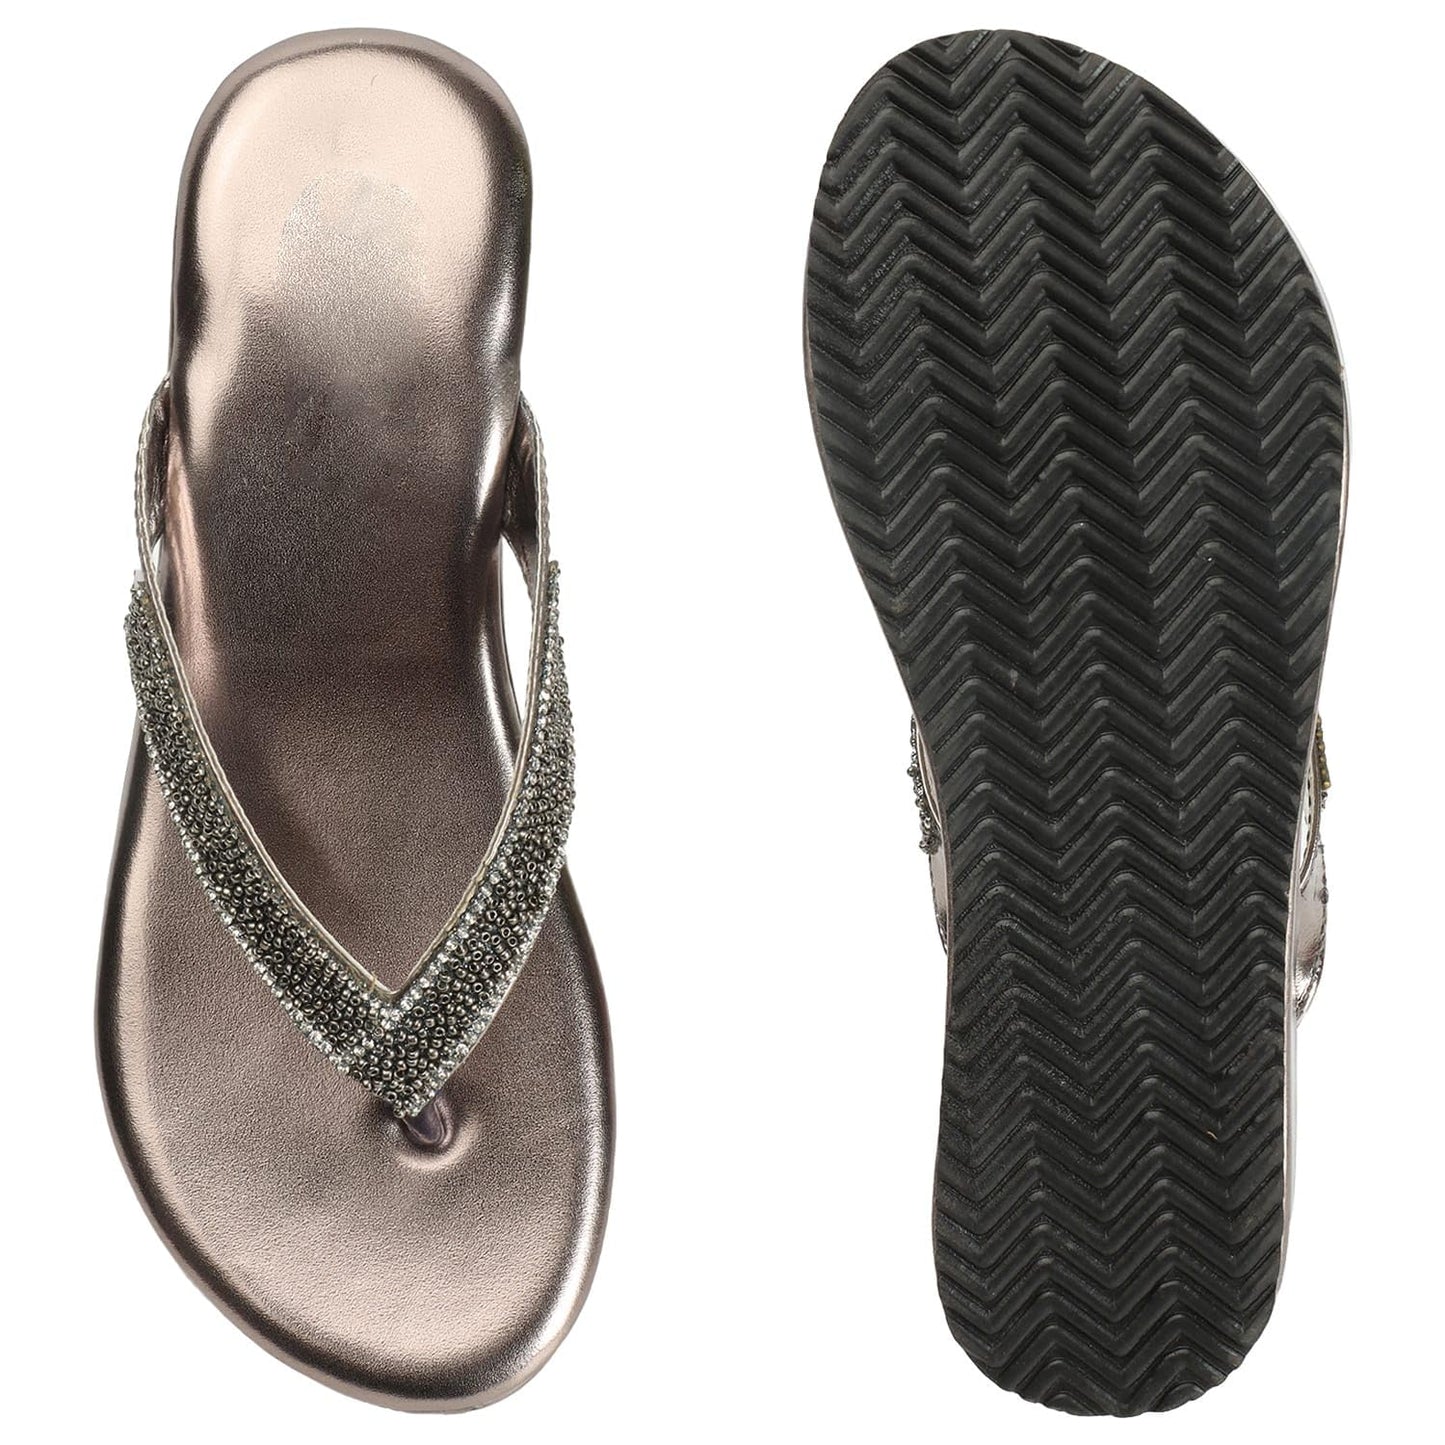 H.M. Flat Sandal Slipper For womens and girls